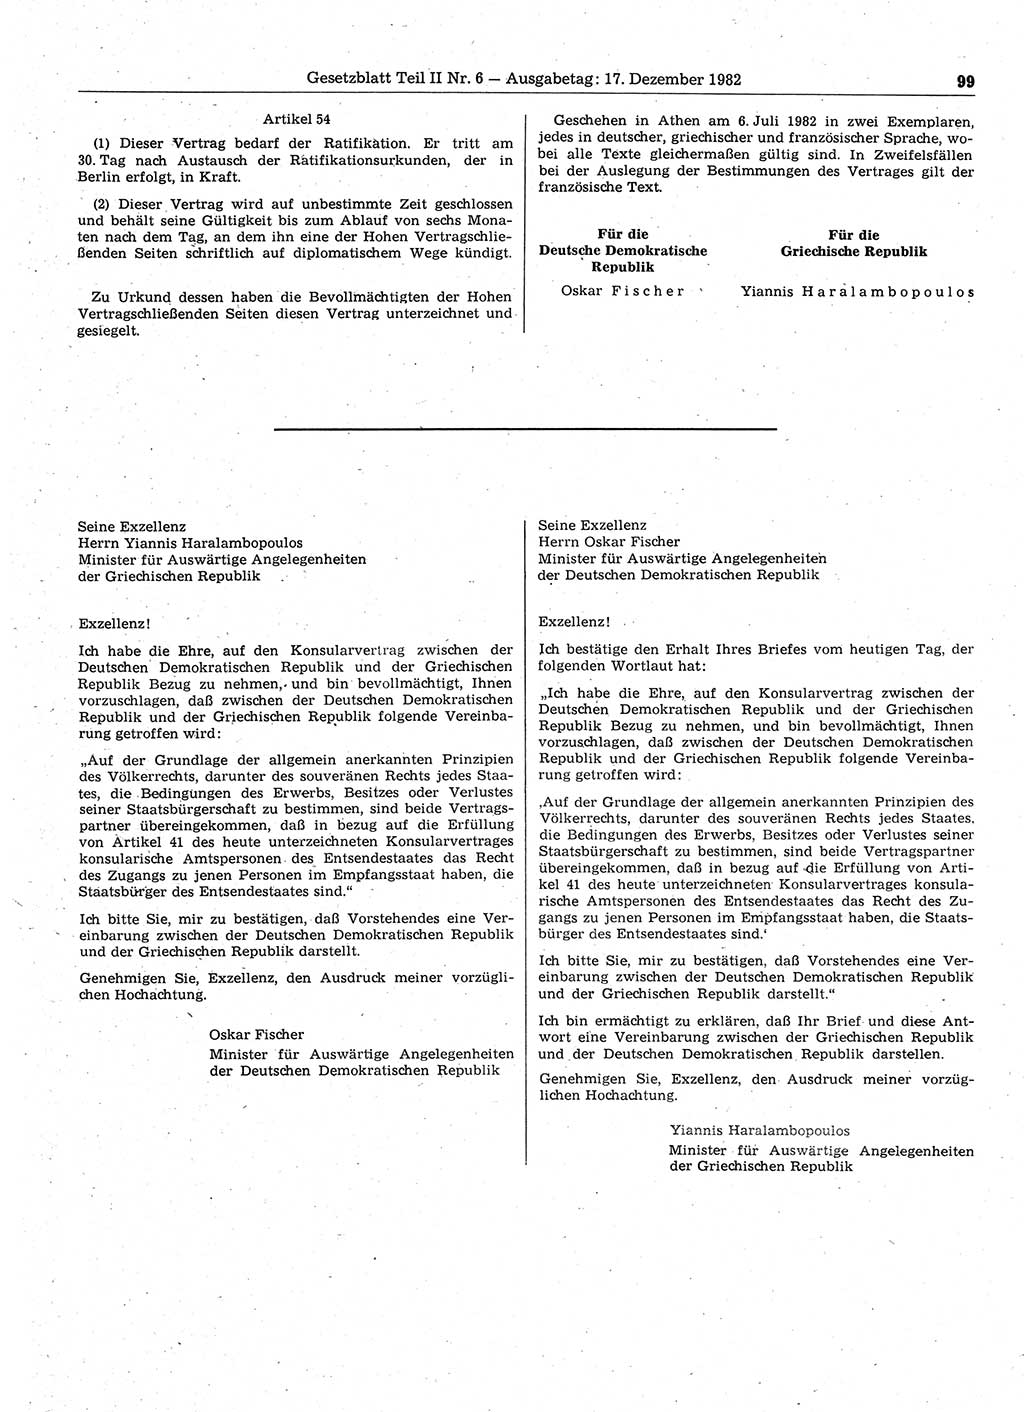 Gesetzblatt (GBl.) der Deutschen Demokratischen Republik (DDR) Teil ⅠⅠ 1982, Seite 99 (GBl. DDR ⅠⅠ 1982, S. 99)